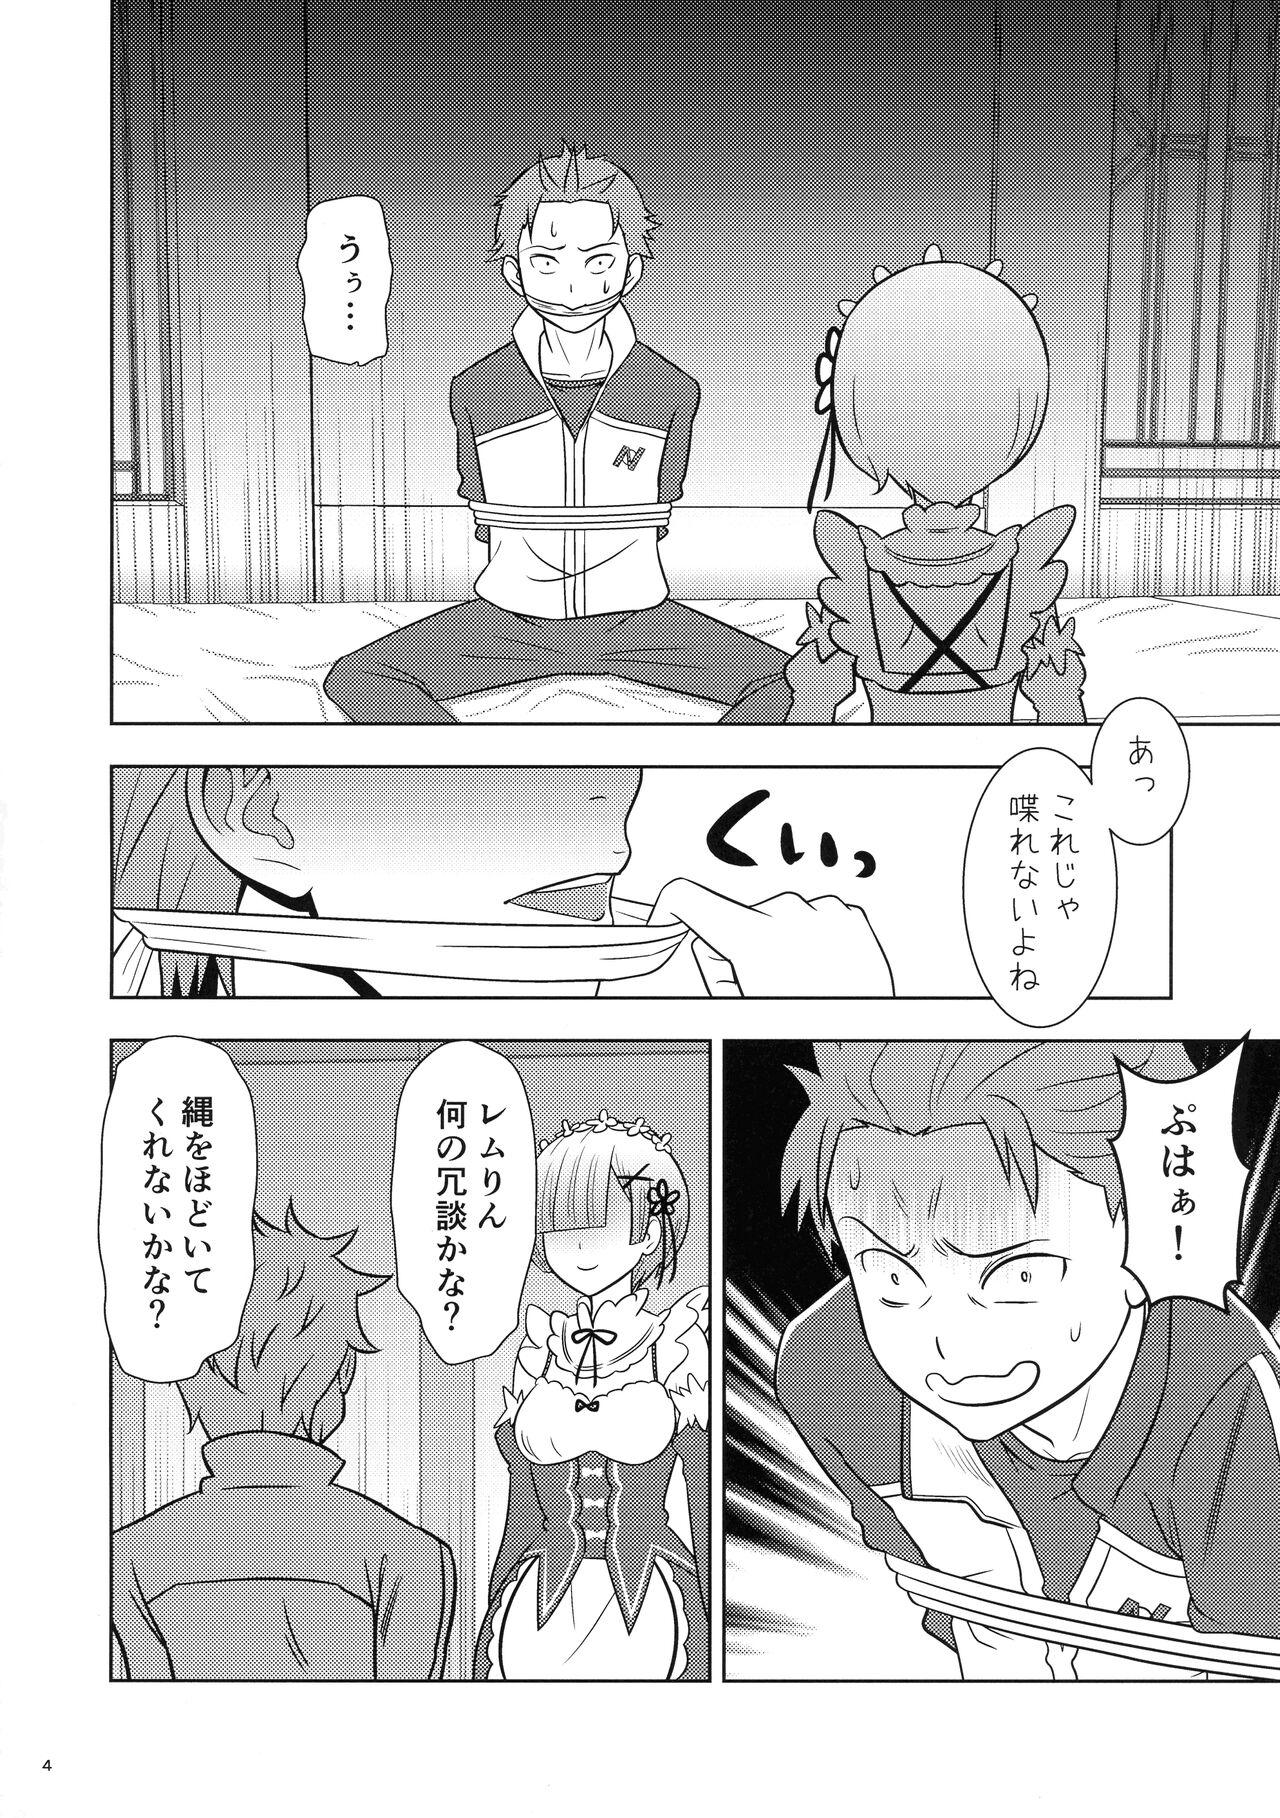 Stepson Nemurihime - Re zero kara hajimeru isekai seikatsu Club - Page 4